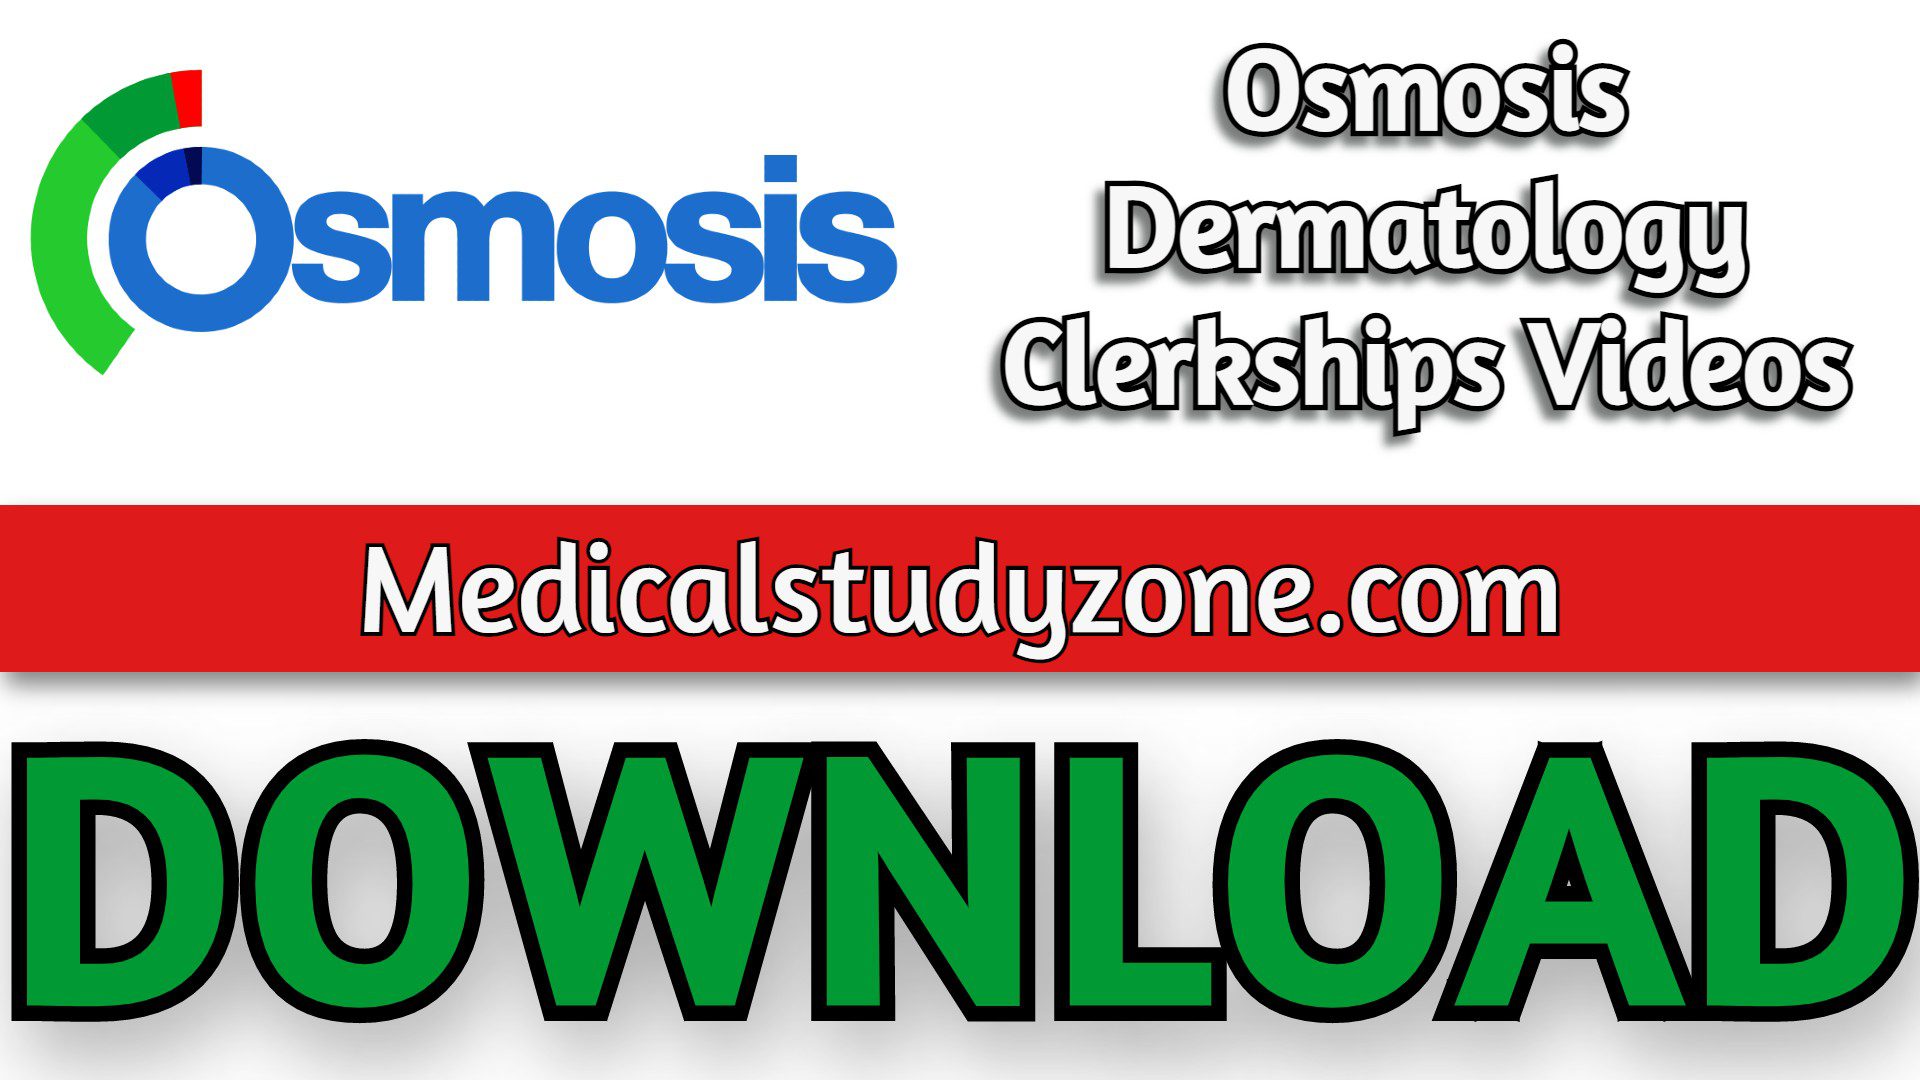 Osmosis Dermatology Clerkships Videos 2022 Free Download